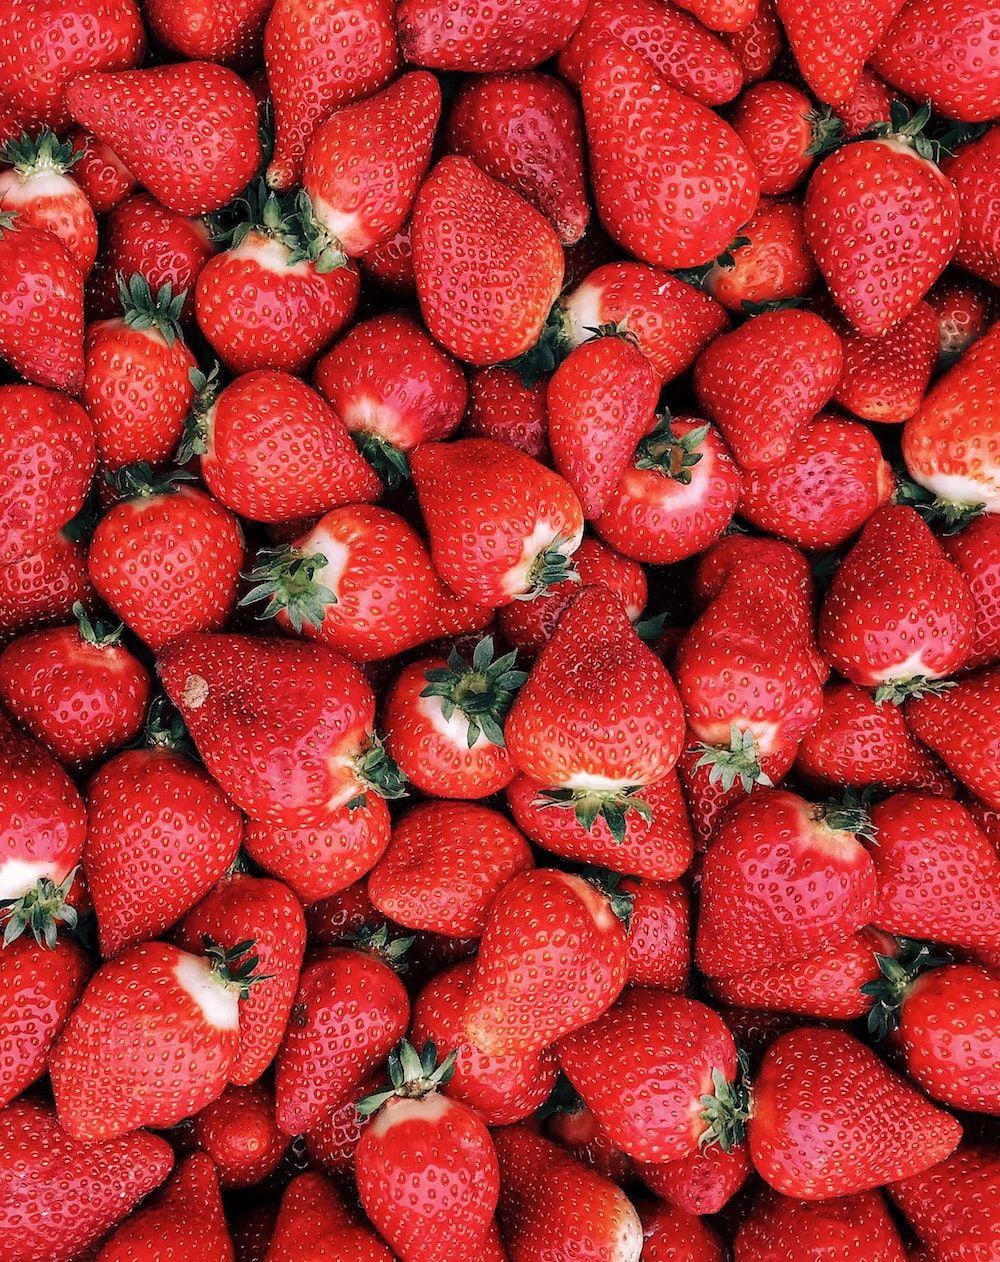  Erdbeeren Hintergrundbild 1000x1262. Strawberries Picture. Download Free Image